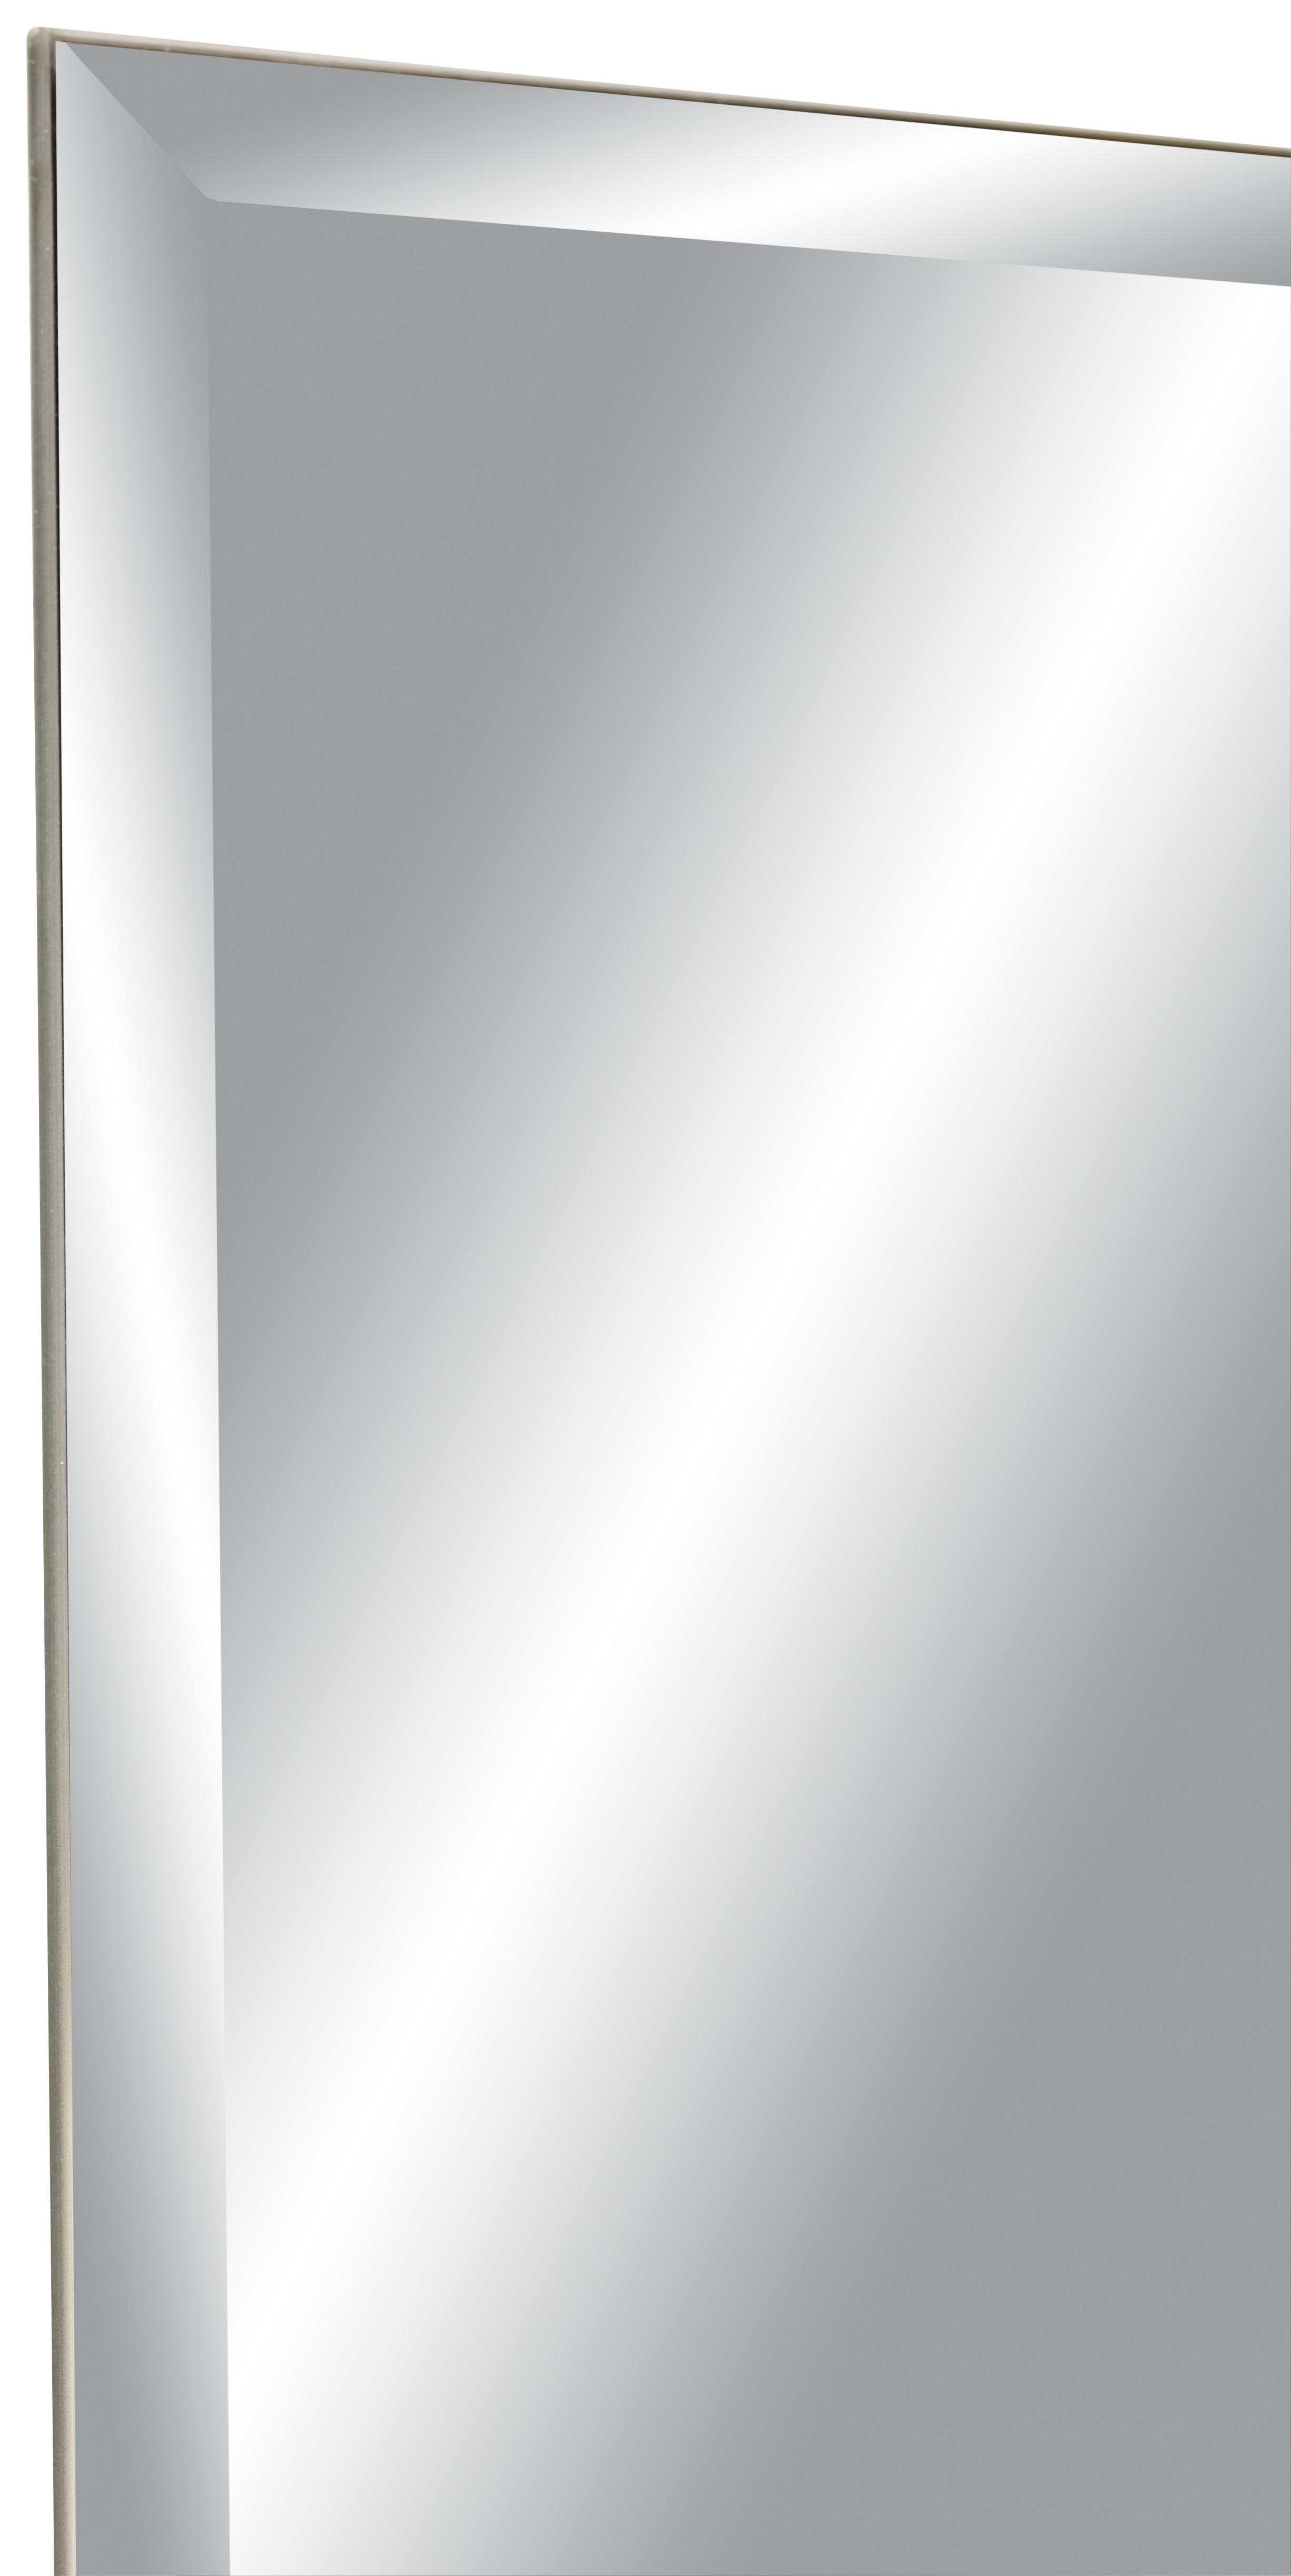 Fazettázott Fali Tükör 60x160 Messina - Ezüst, Üveg (60/160cm) - Modern Living